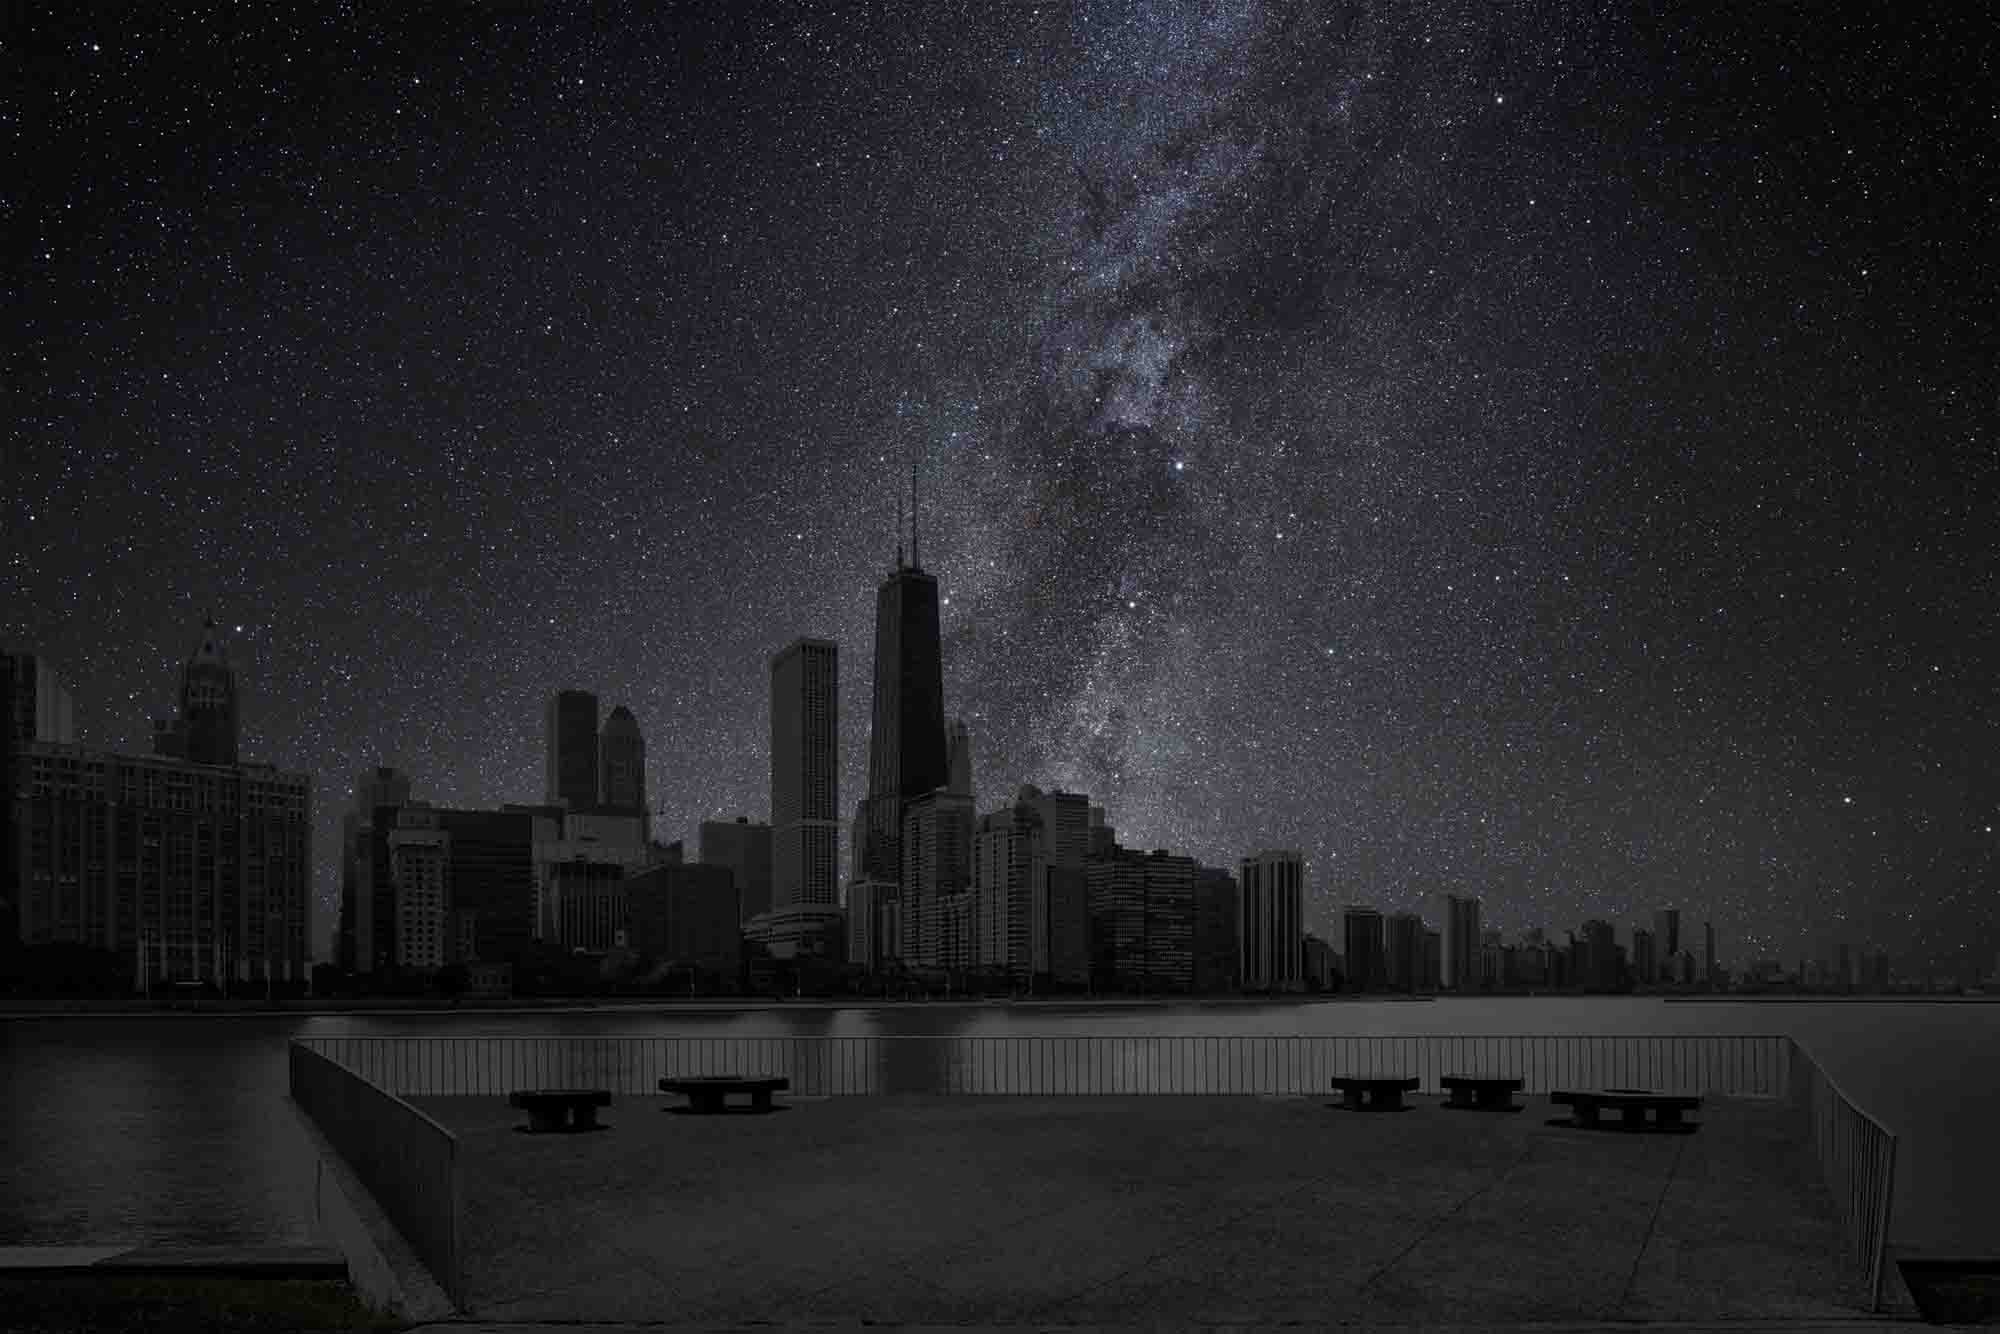 Chicago 41° 53' 42" N 2015-09-15 Lst 2:20<br/>Darkened Cities - Villes éteintes